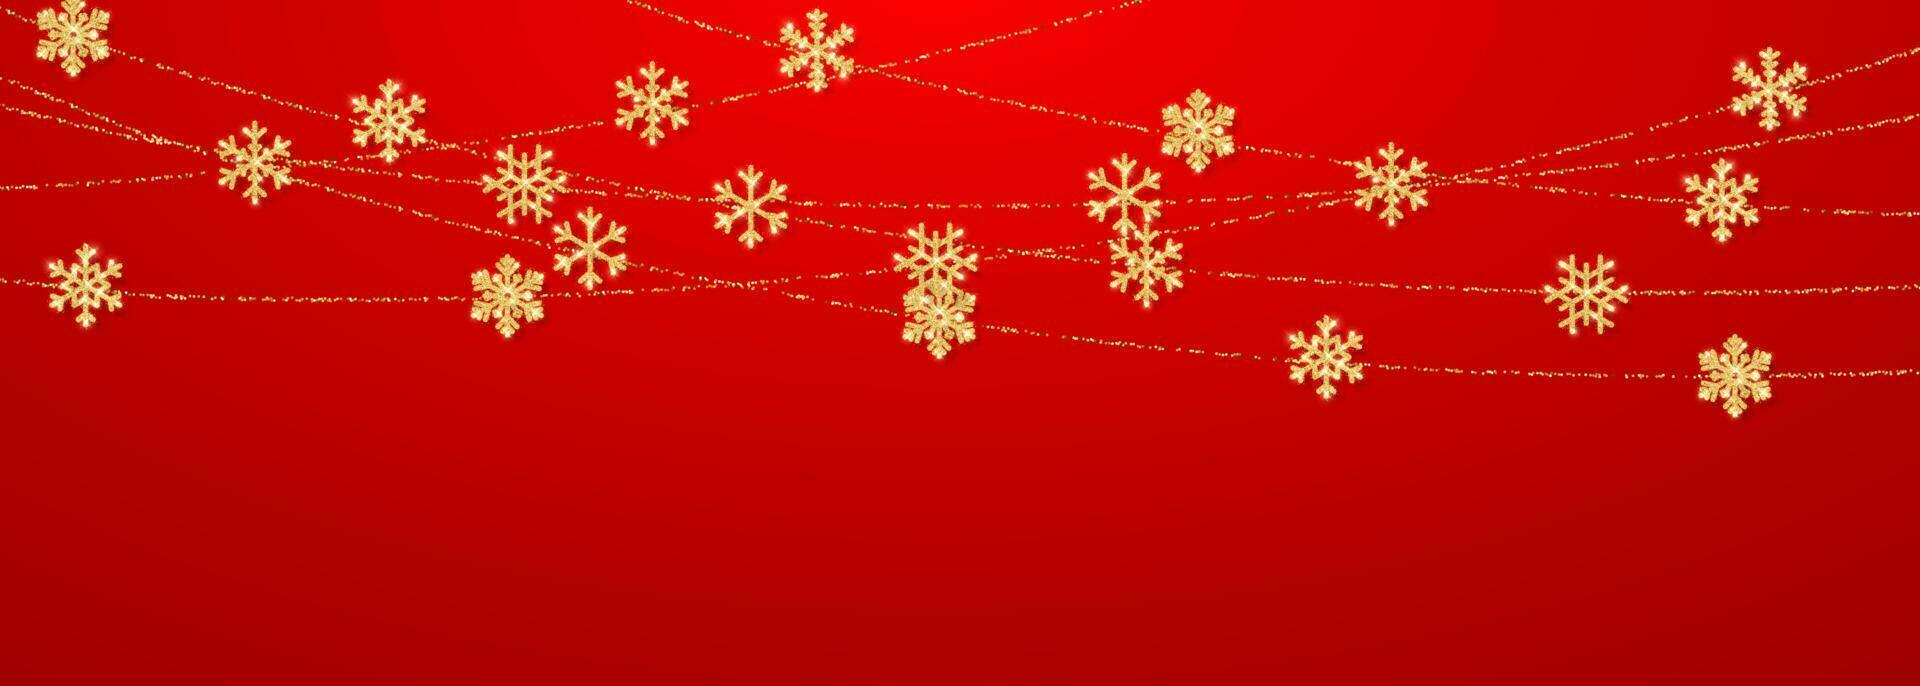 Natale o nuovo anno d'oro fiocco di neve decorazione ghirlanda su rosso sfondo. sospeso luccichio fiocco di neve. vettore illustrazione